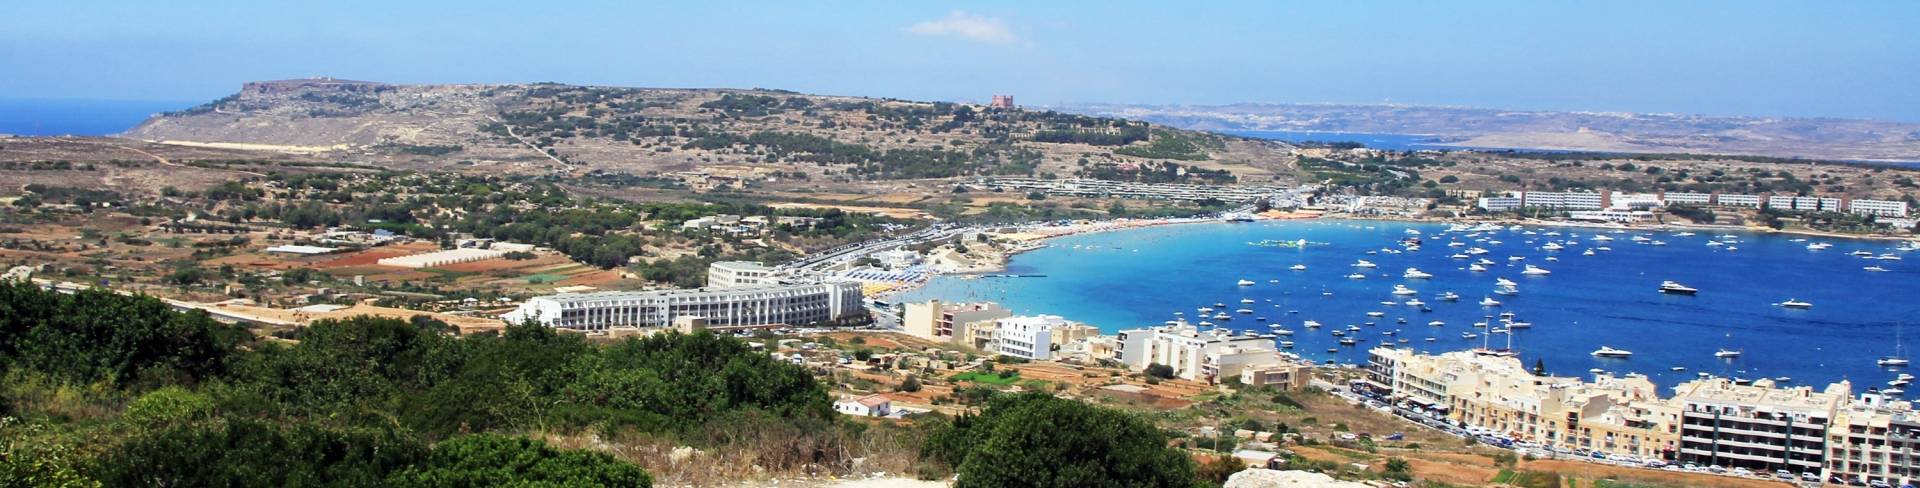 Мелиха - пляжный курорт на Мальте